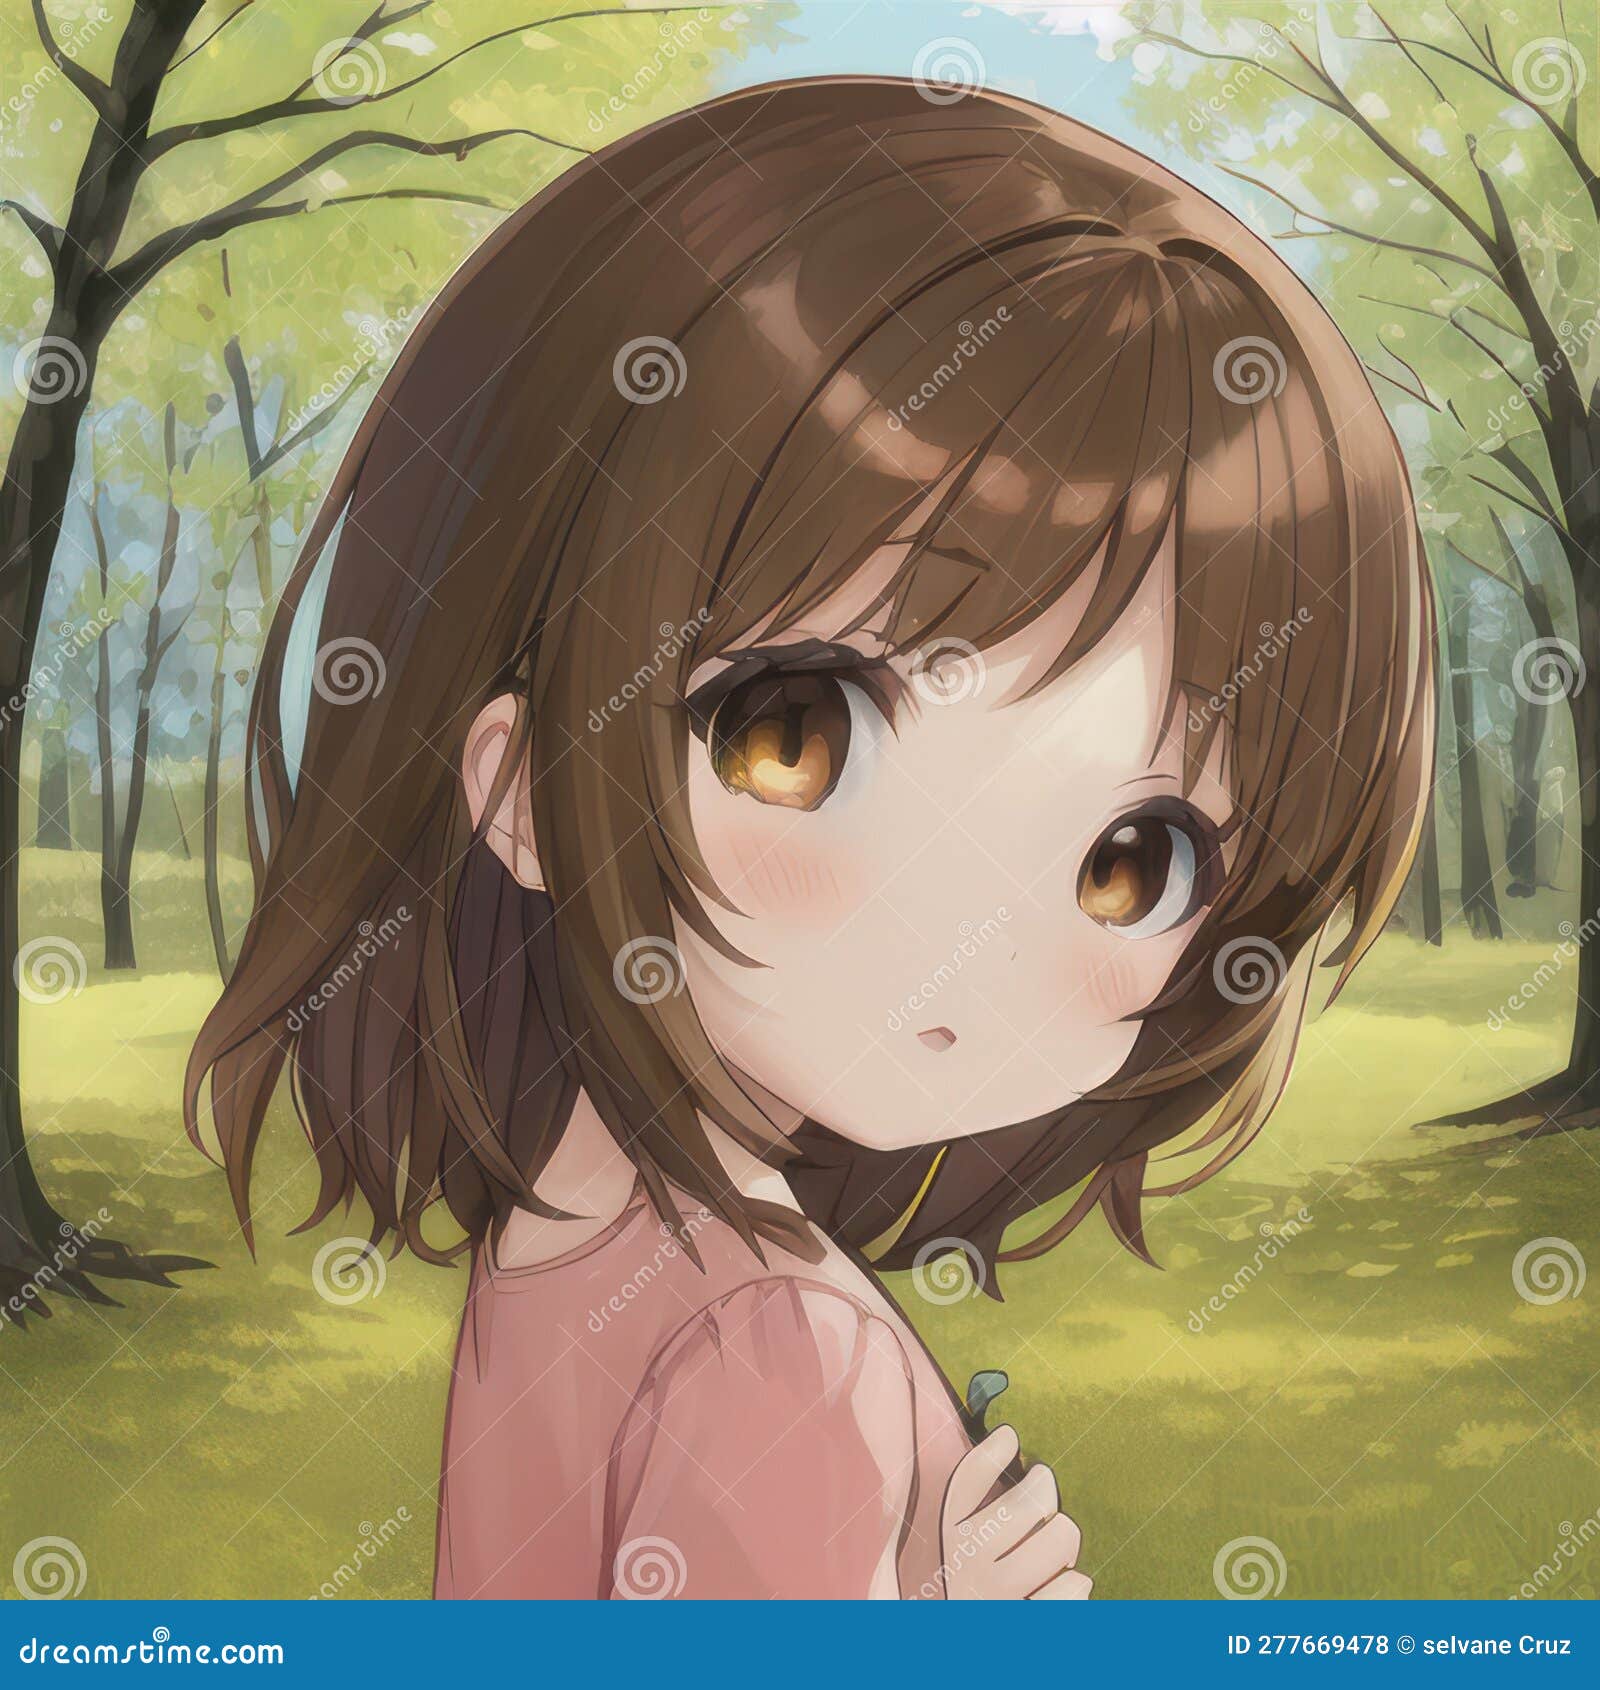 Happy anime face. Manga style big blue eyes, - Stock Illustration  [65574635] - PIXTA